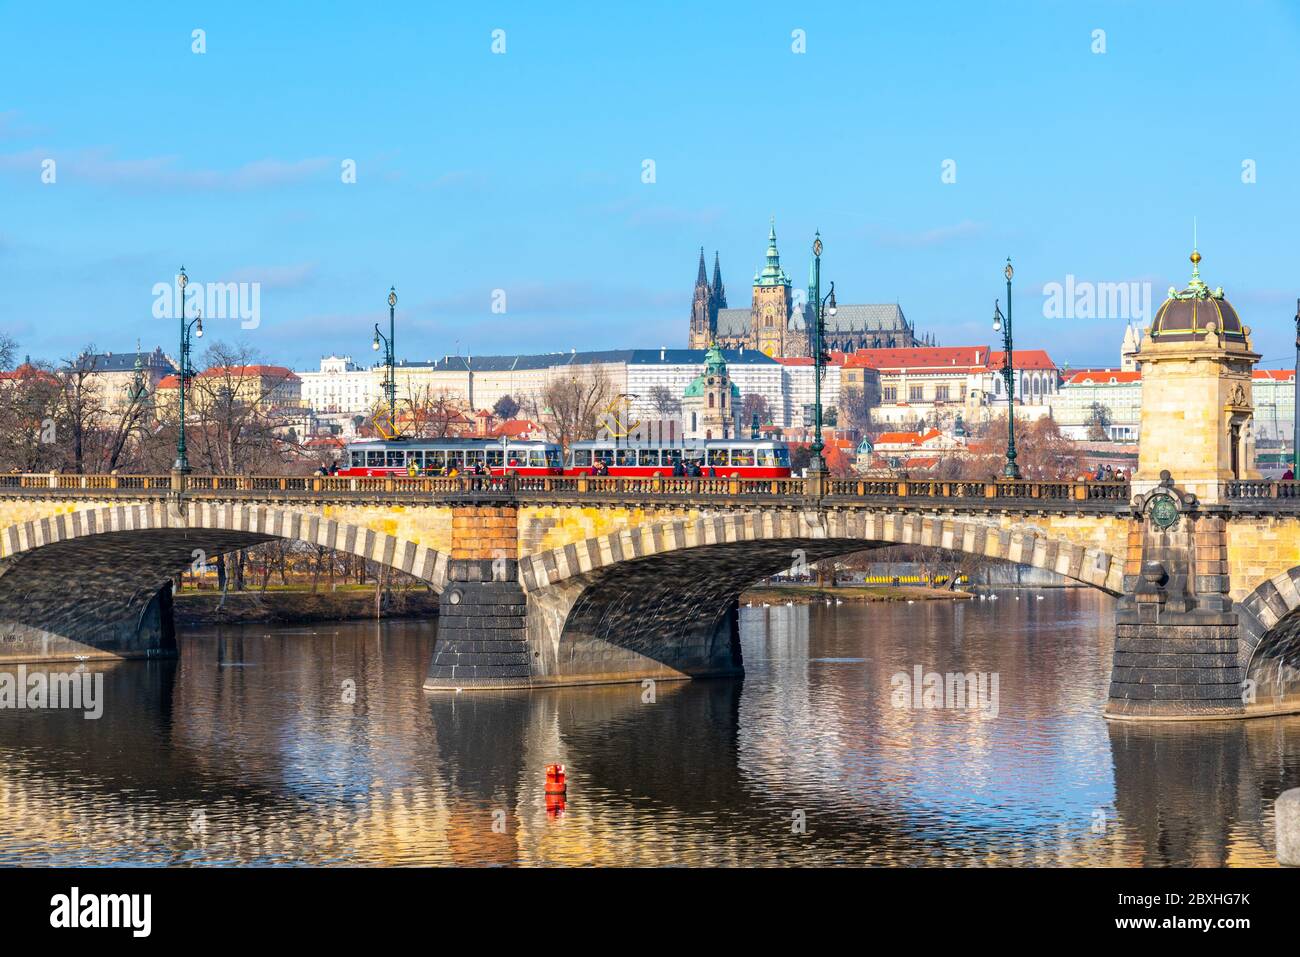 Pont de la légion, tchèque : la plupart des Legii, se reflète dans la Vltava avec le château de Prague en arrière-plan. Journée d'hiver claire et ensoleillée à Prague, République tchèque. Banque D'Images